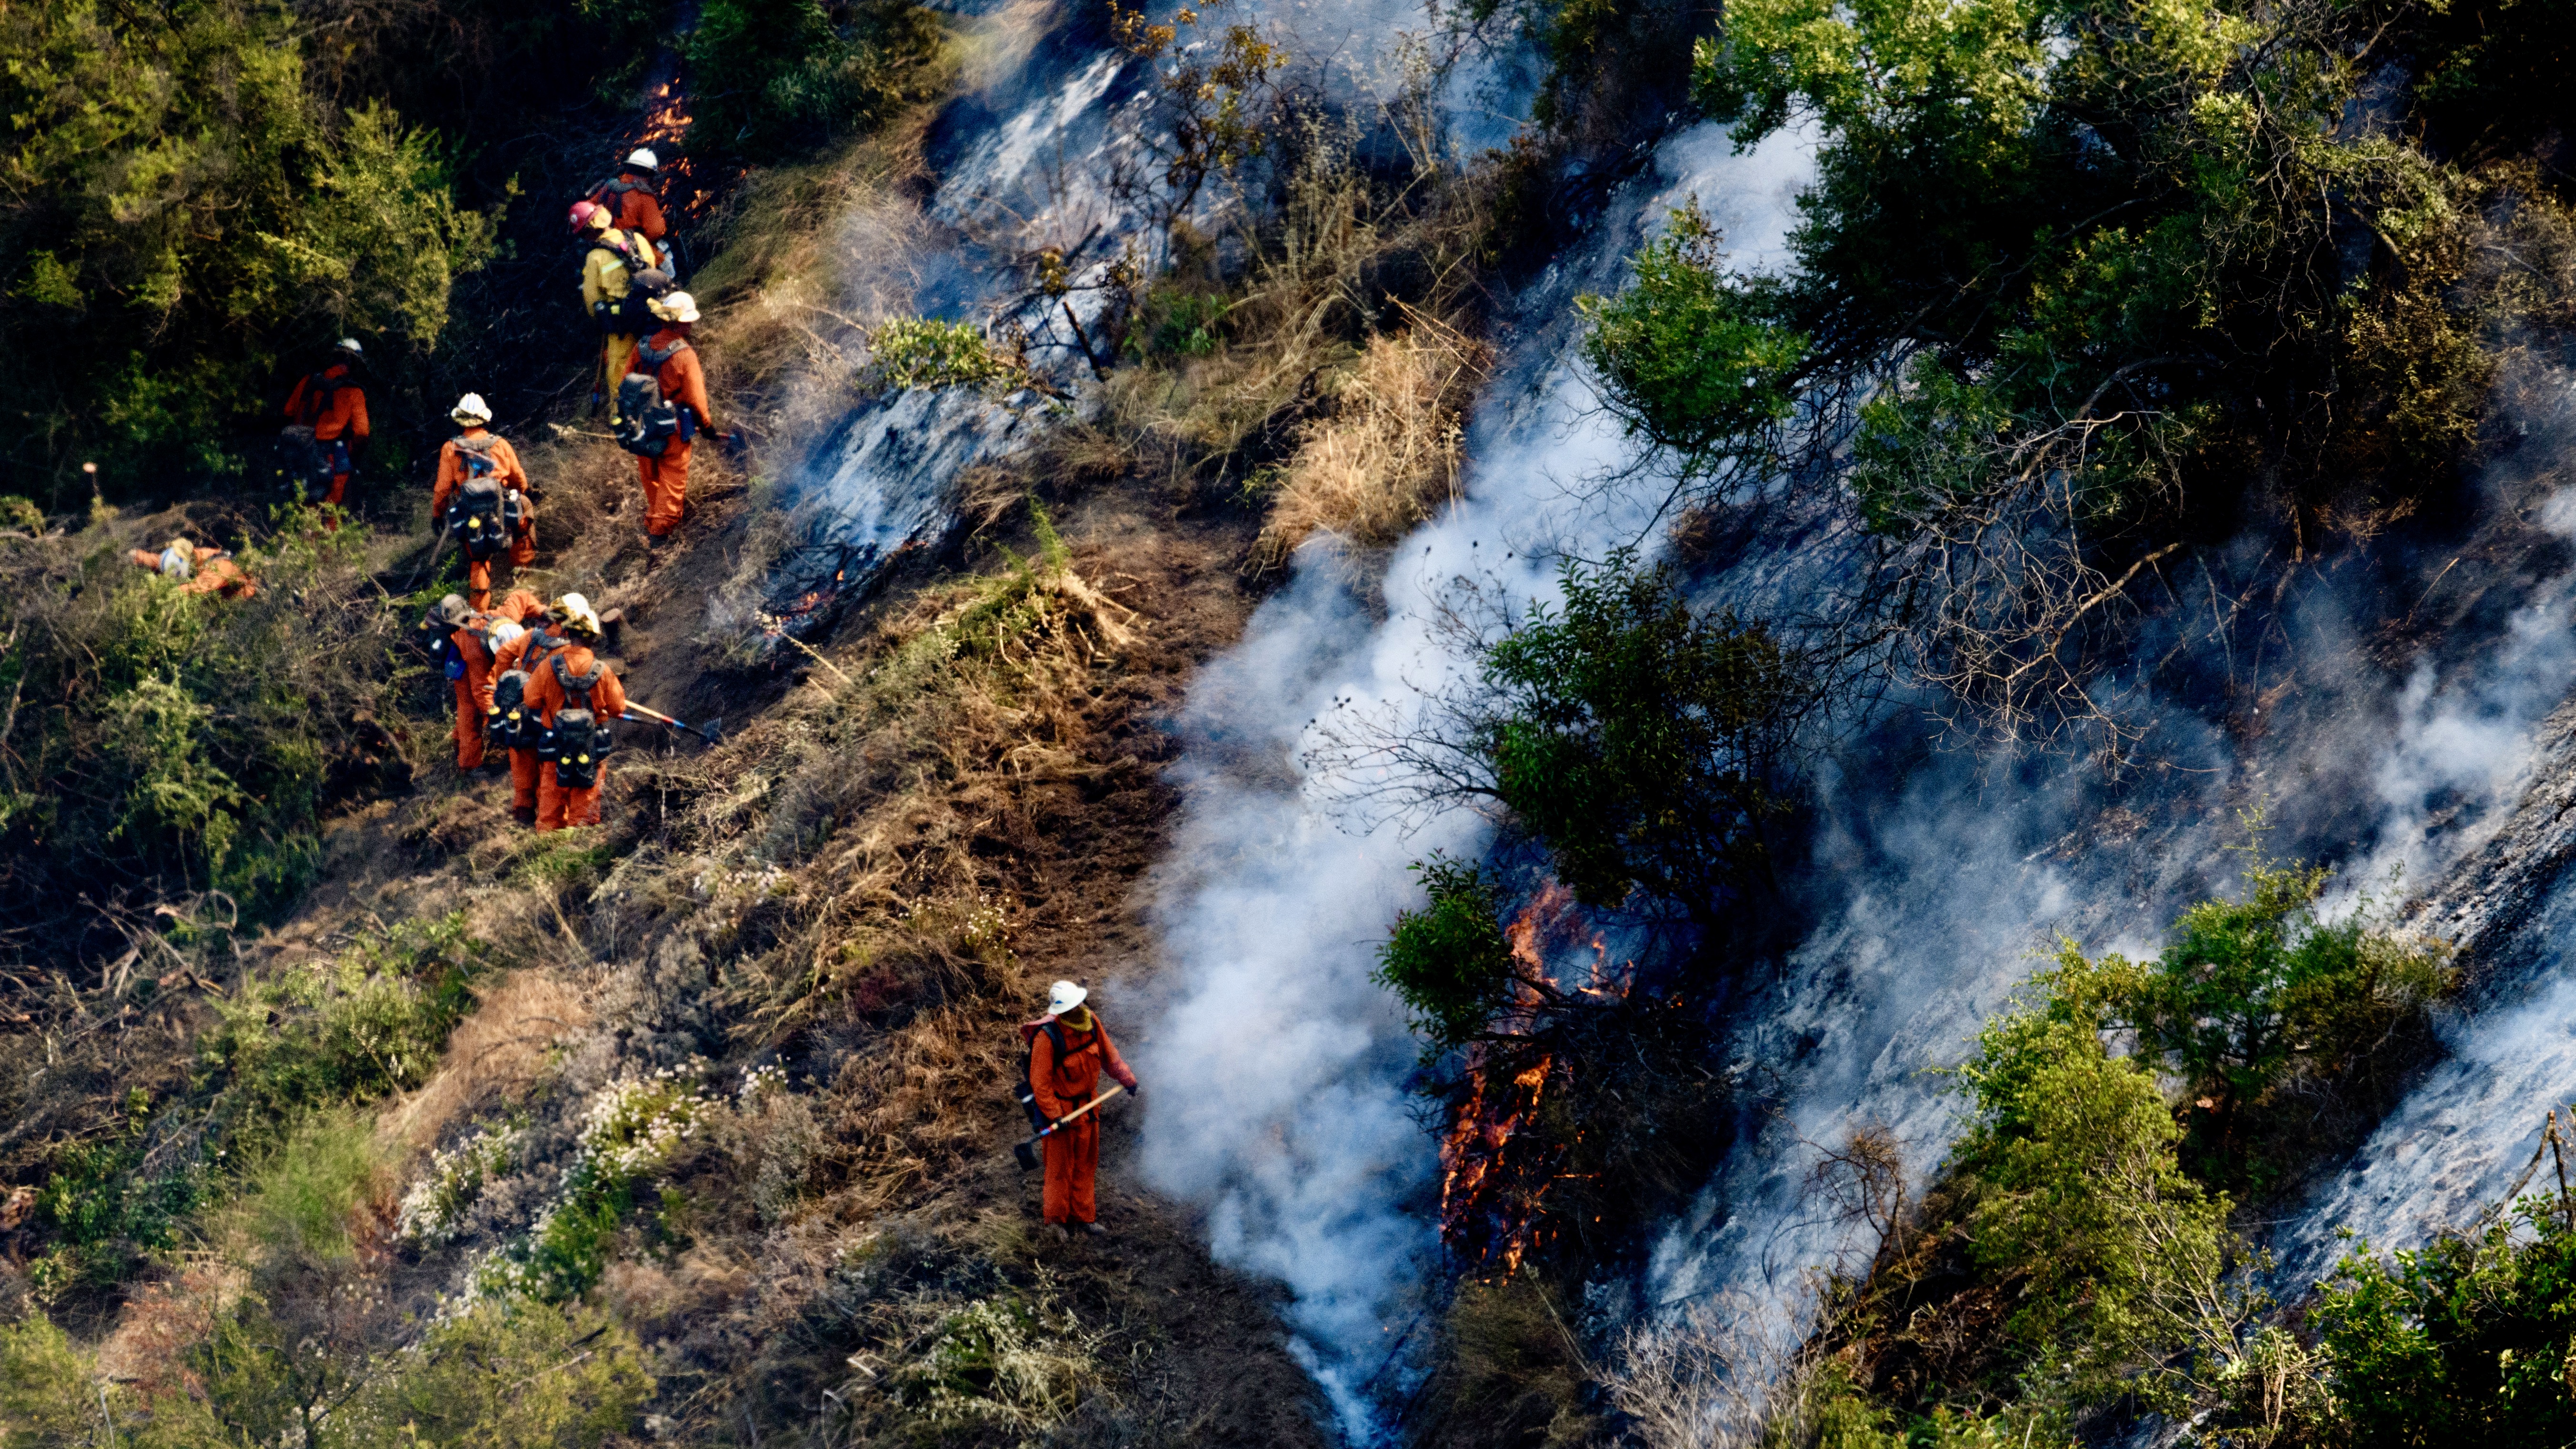 2017 májusában a Mandeville-kanyon környékén, több millió dolláros ingatlanok mellett csaptak fel a lángok.